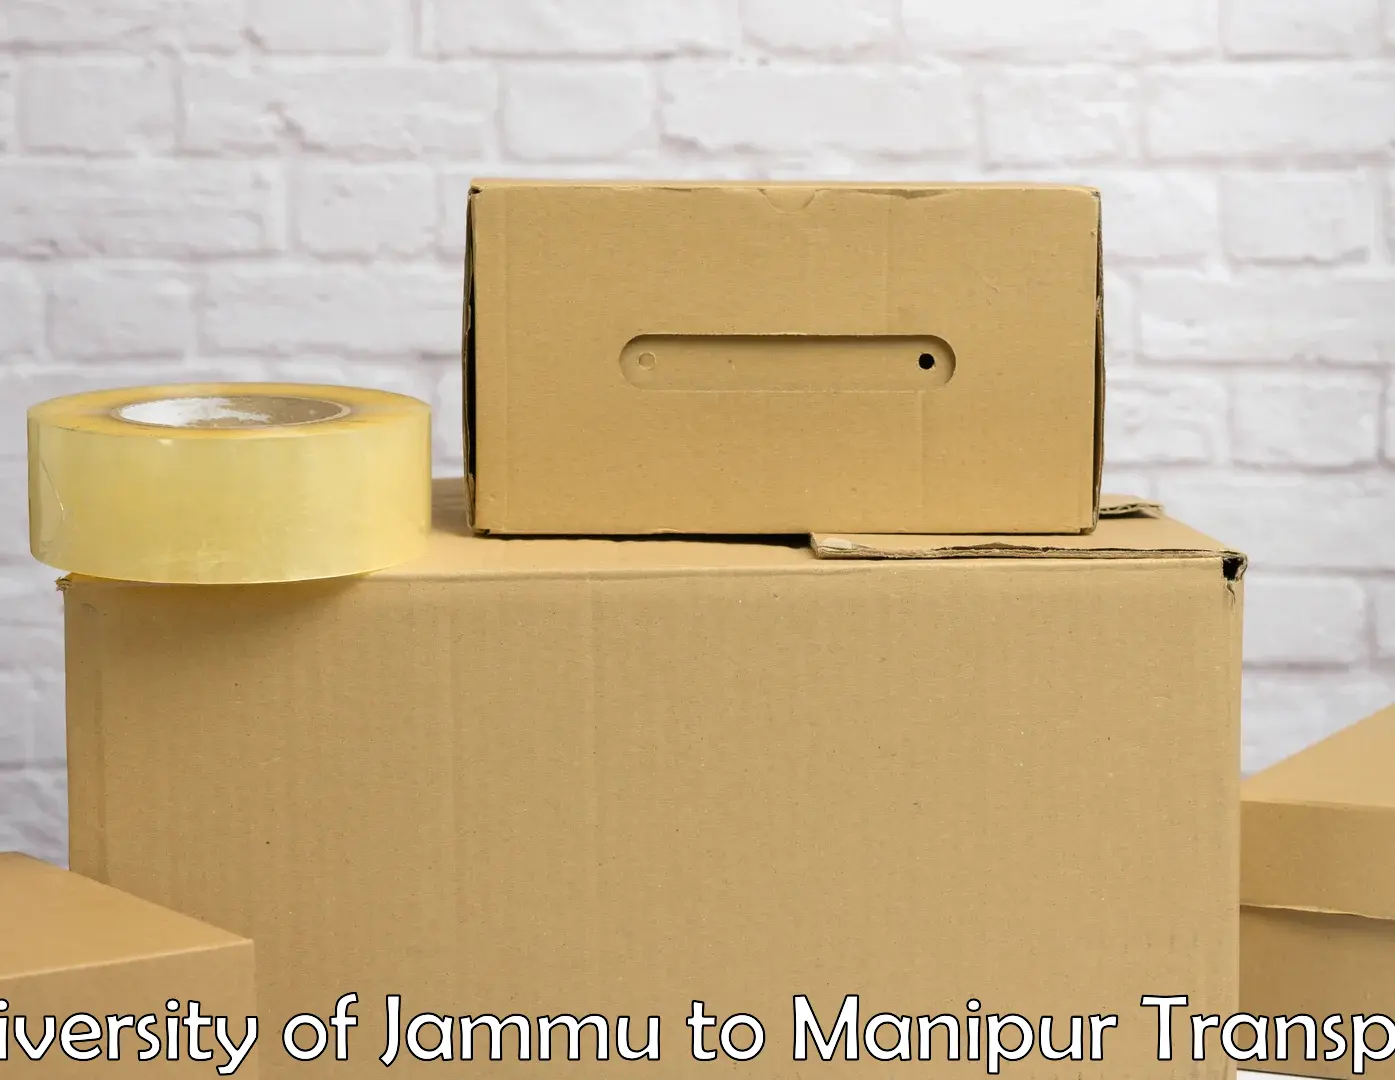 Cycle transportation service University of Jammu to Kakching